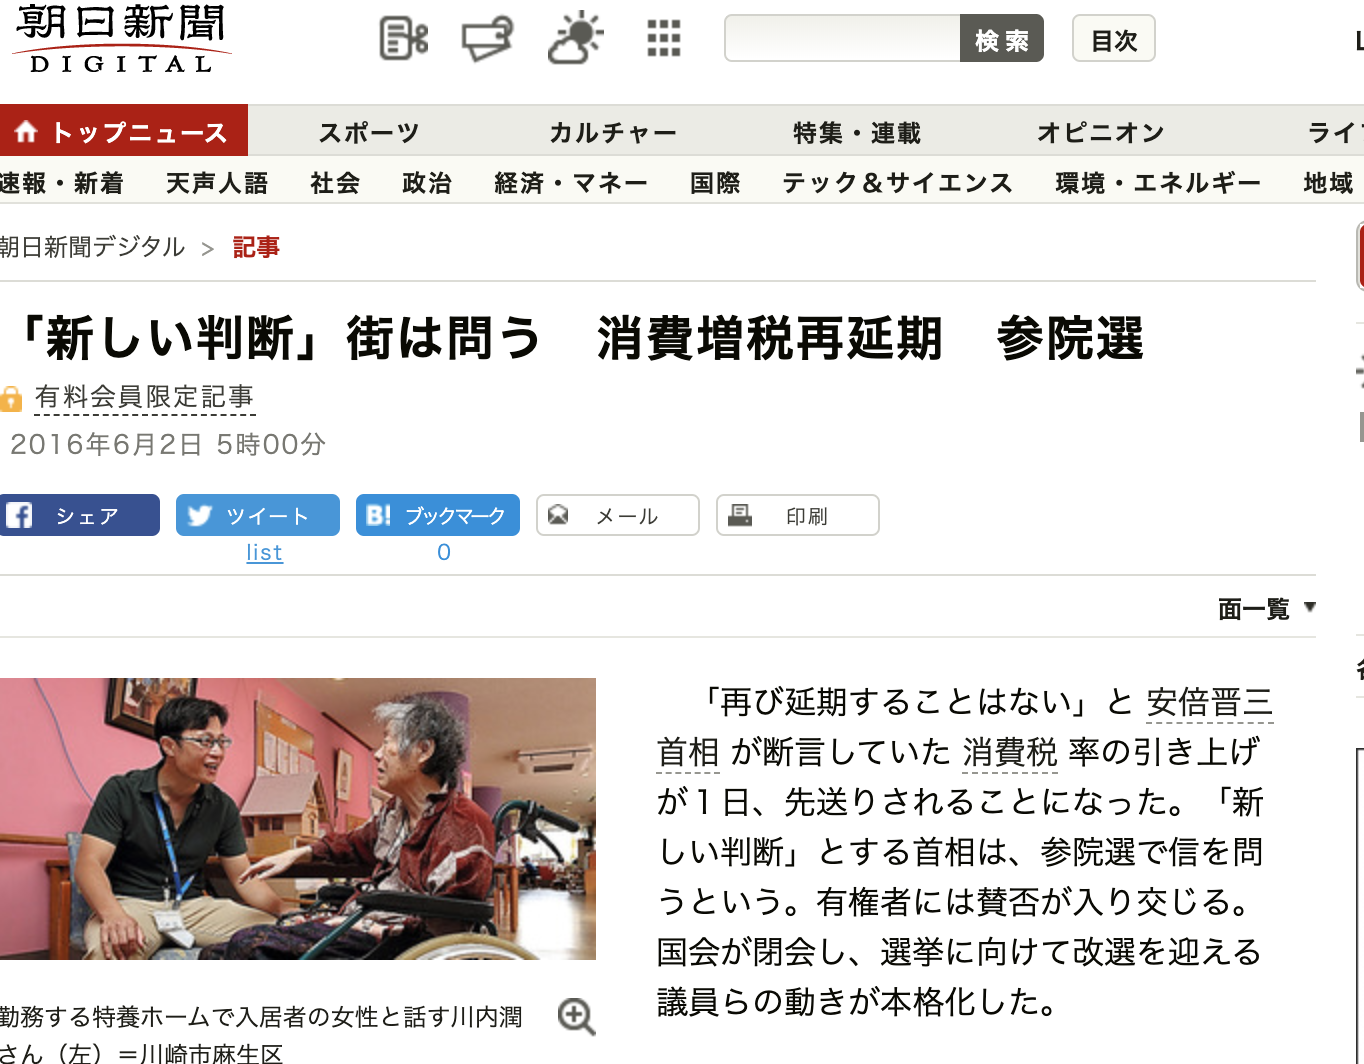 朝日新聞 『「新しい判断」街は問う  消費増税再延期  参院選』